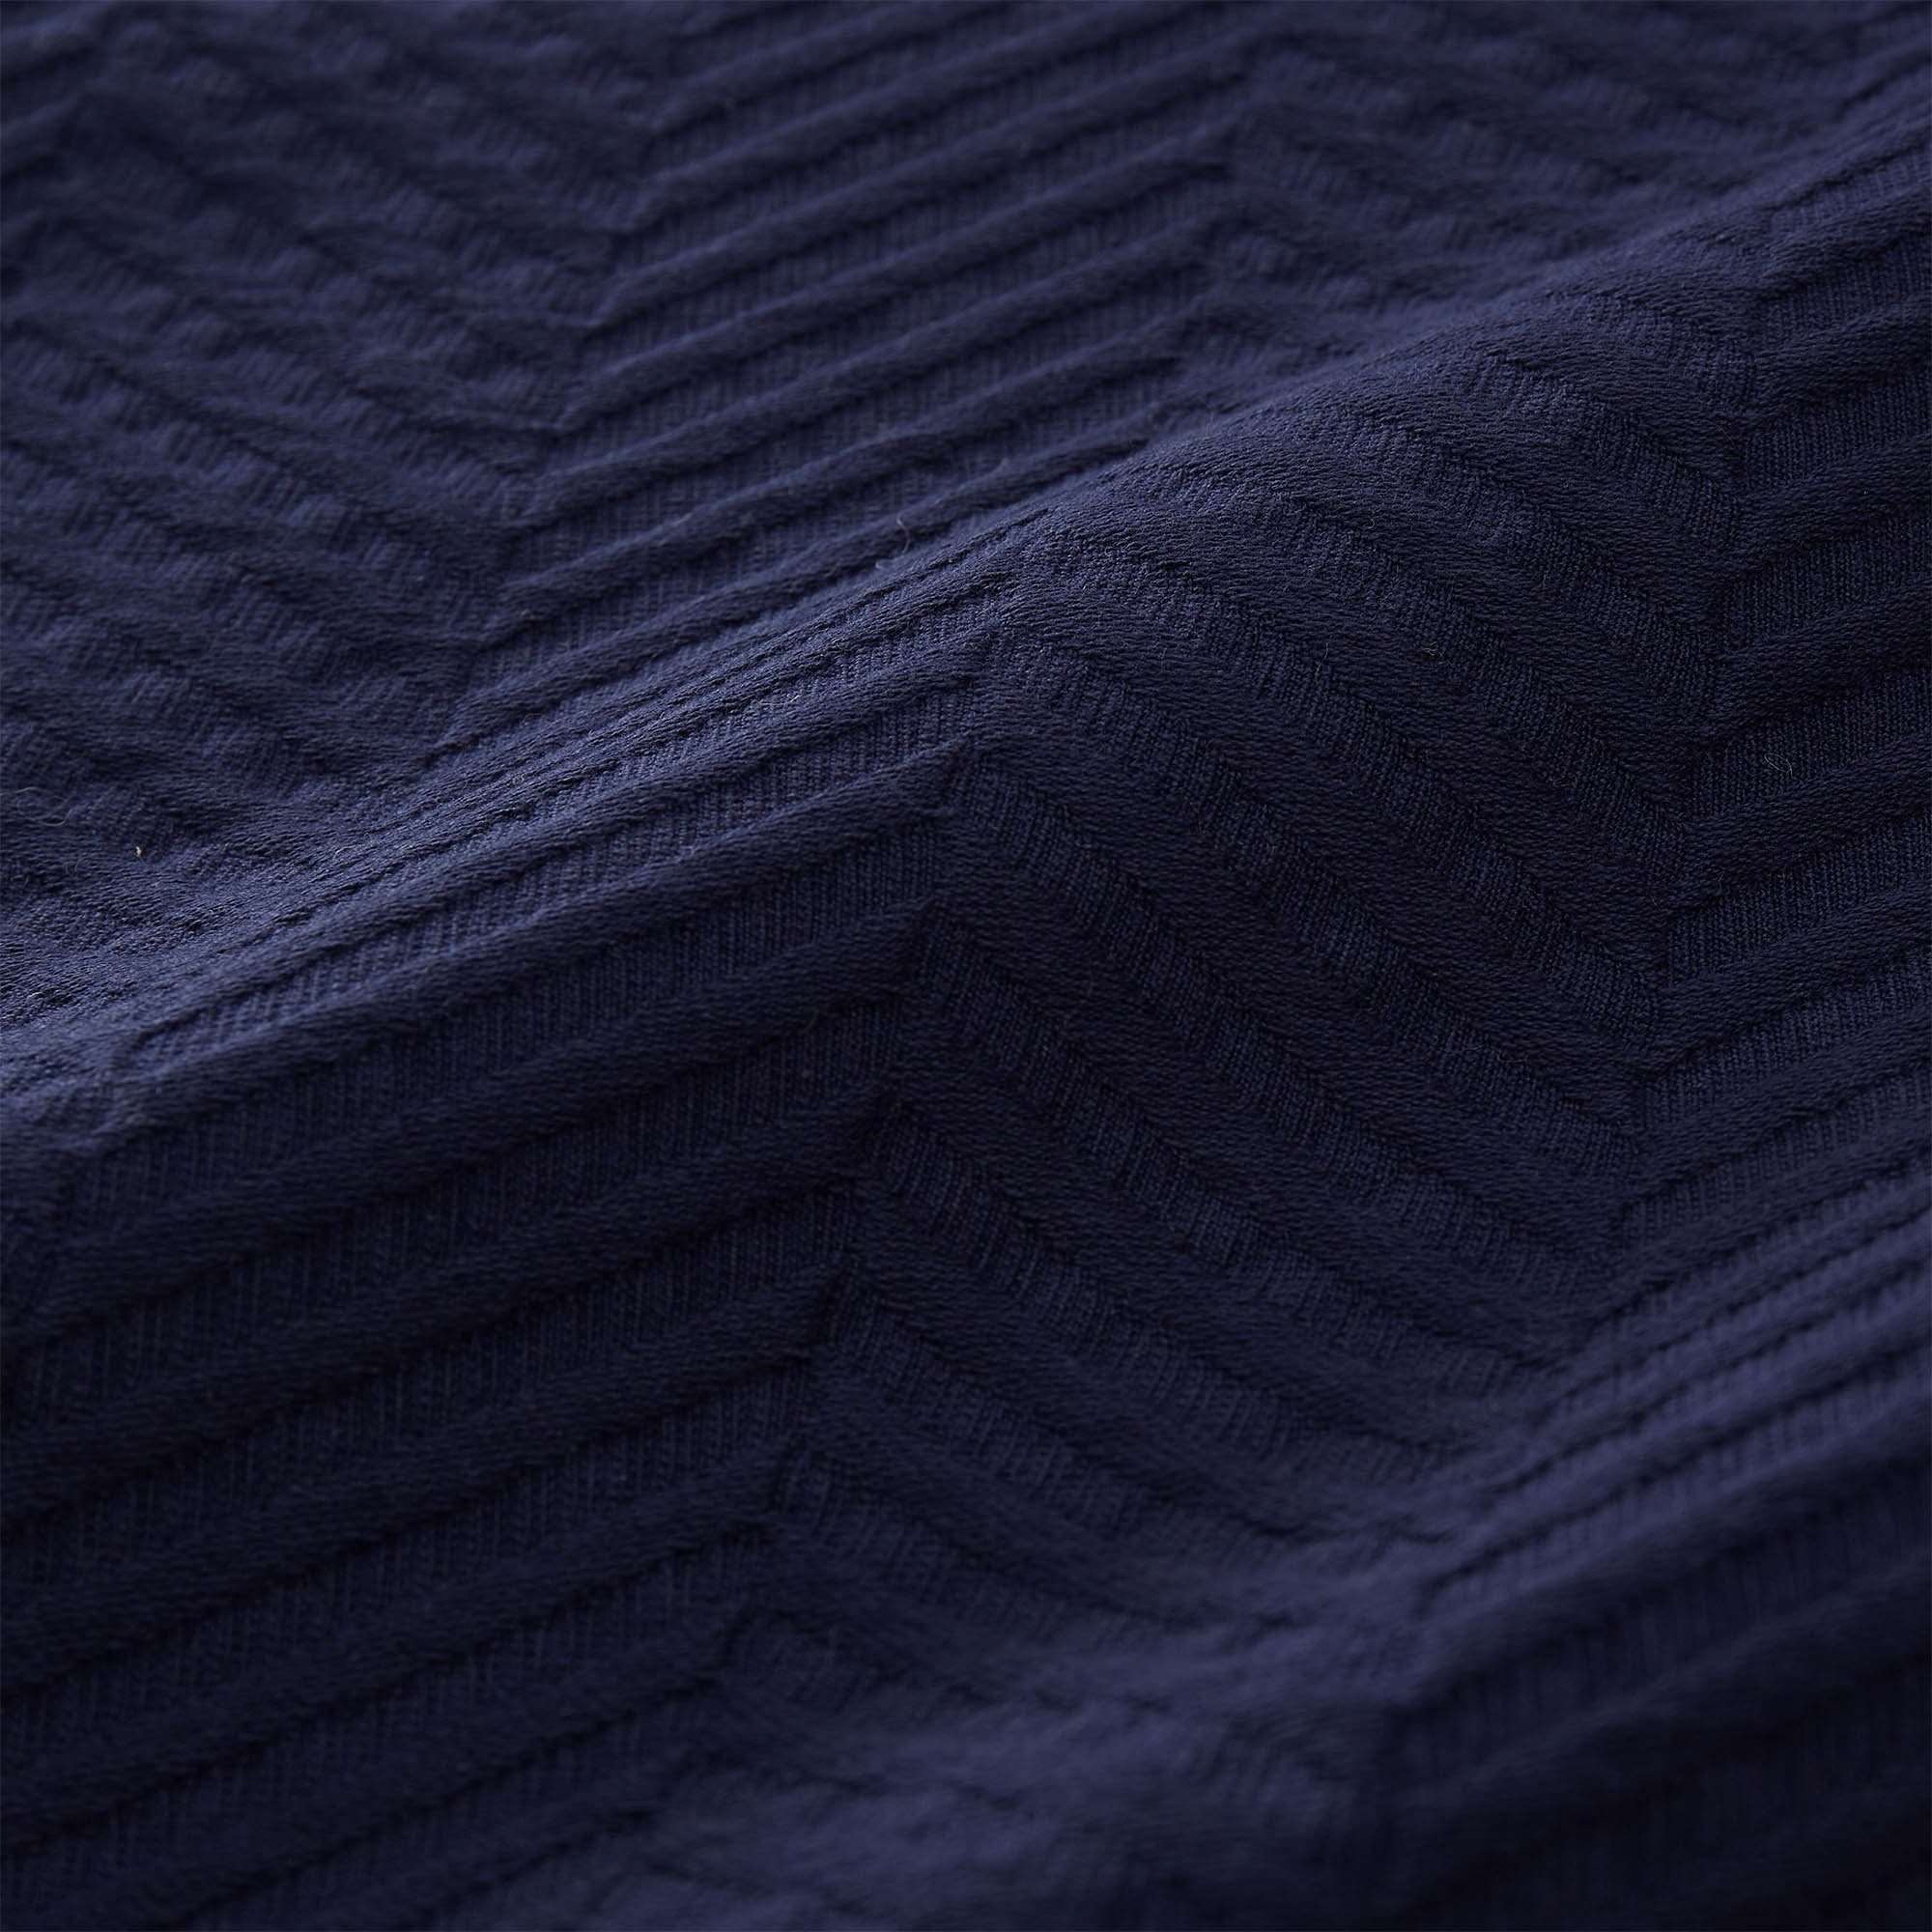 Lixa, Baumwolle Plaid aus Tagesdecke Baumwolldecke Dunkelblau mit Fischgrätstruktur Urbanara,